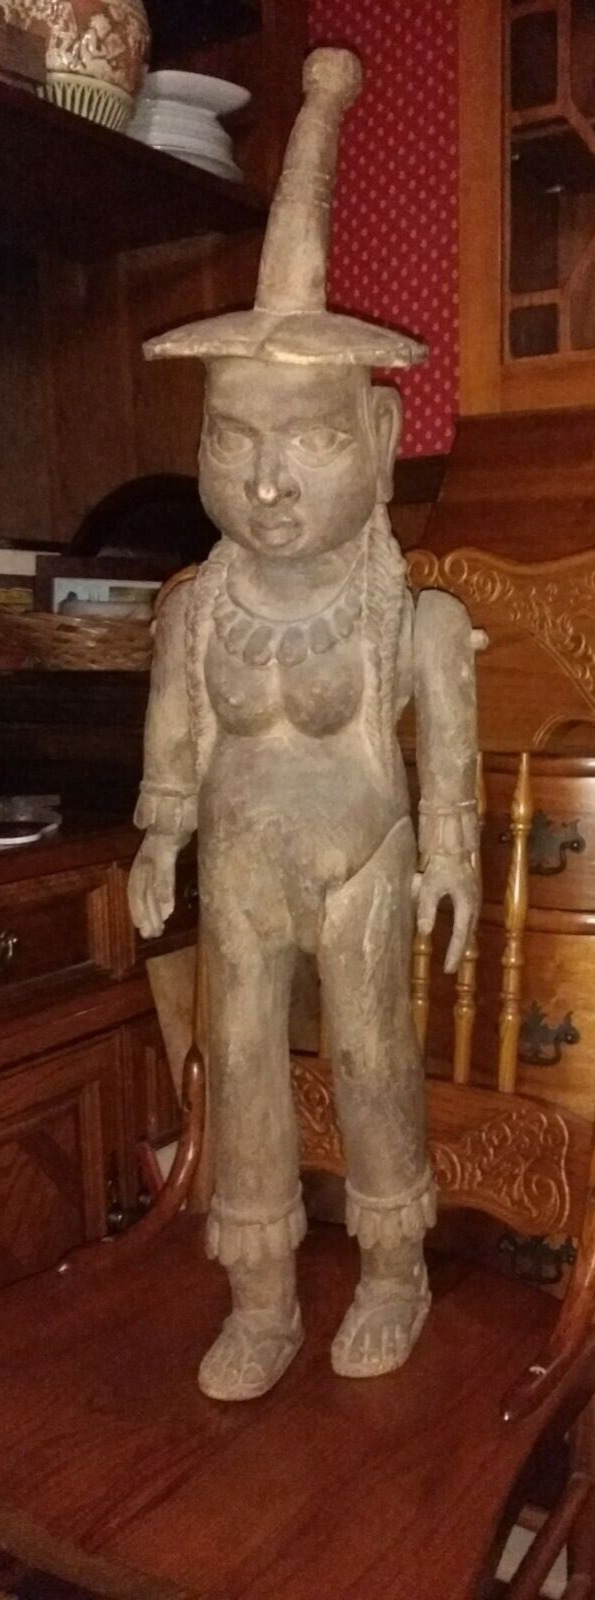 Unusual Carved Wood Human Figure